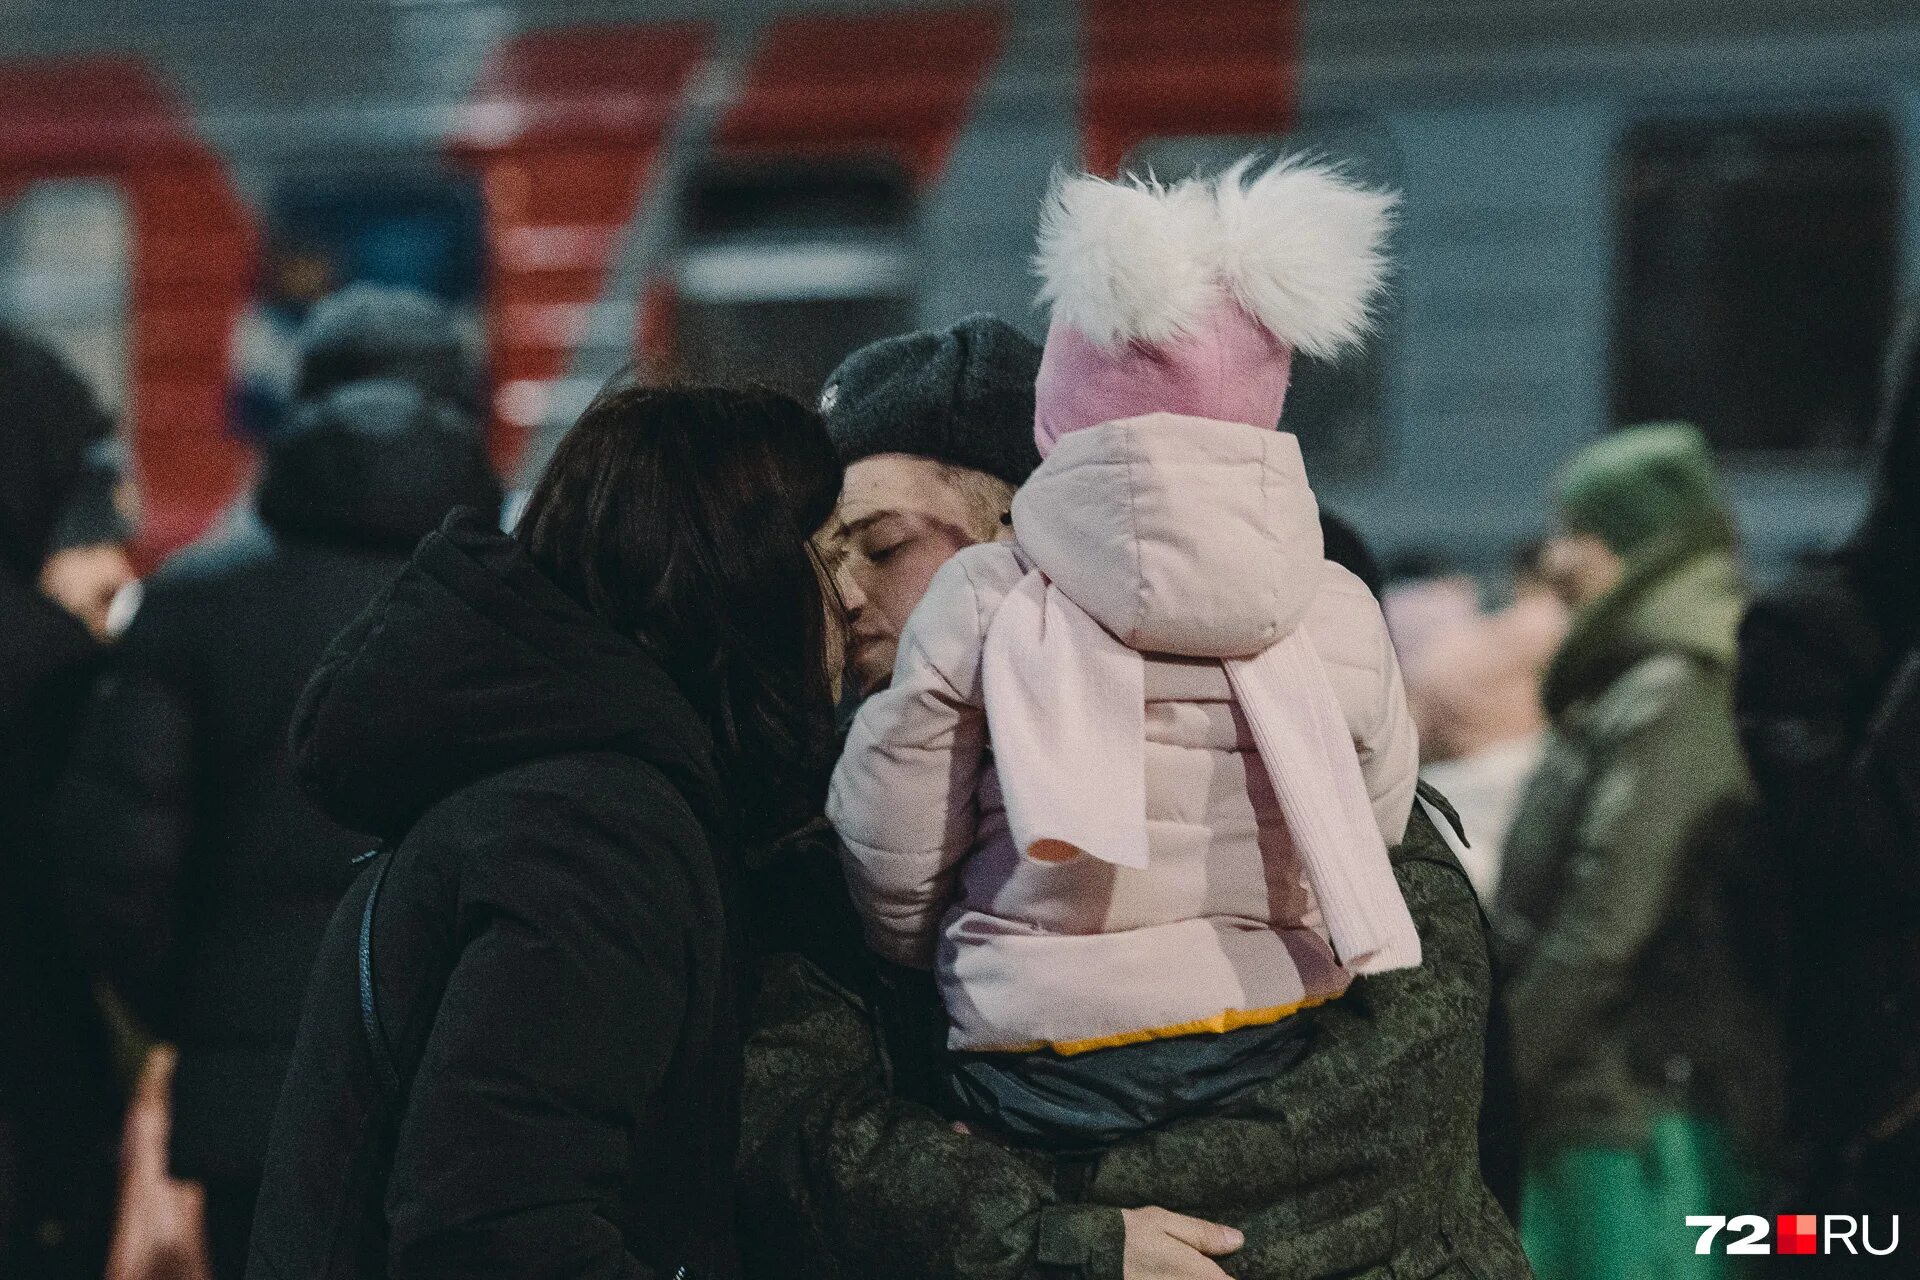 Закон об отсрочке многодетных отцов. Люди на улицах Екатеринбурга зимой. Мобилизация с тремя детьми. Две девушки в пуховиках. Тысячи пассажиров метро.